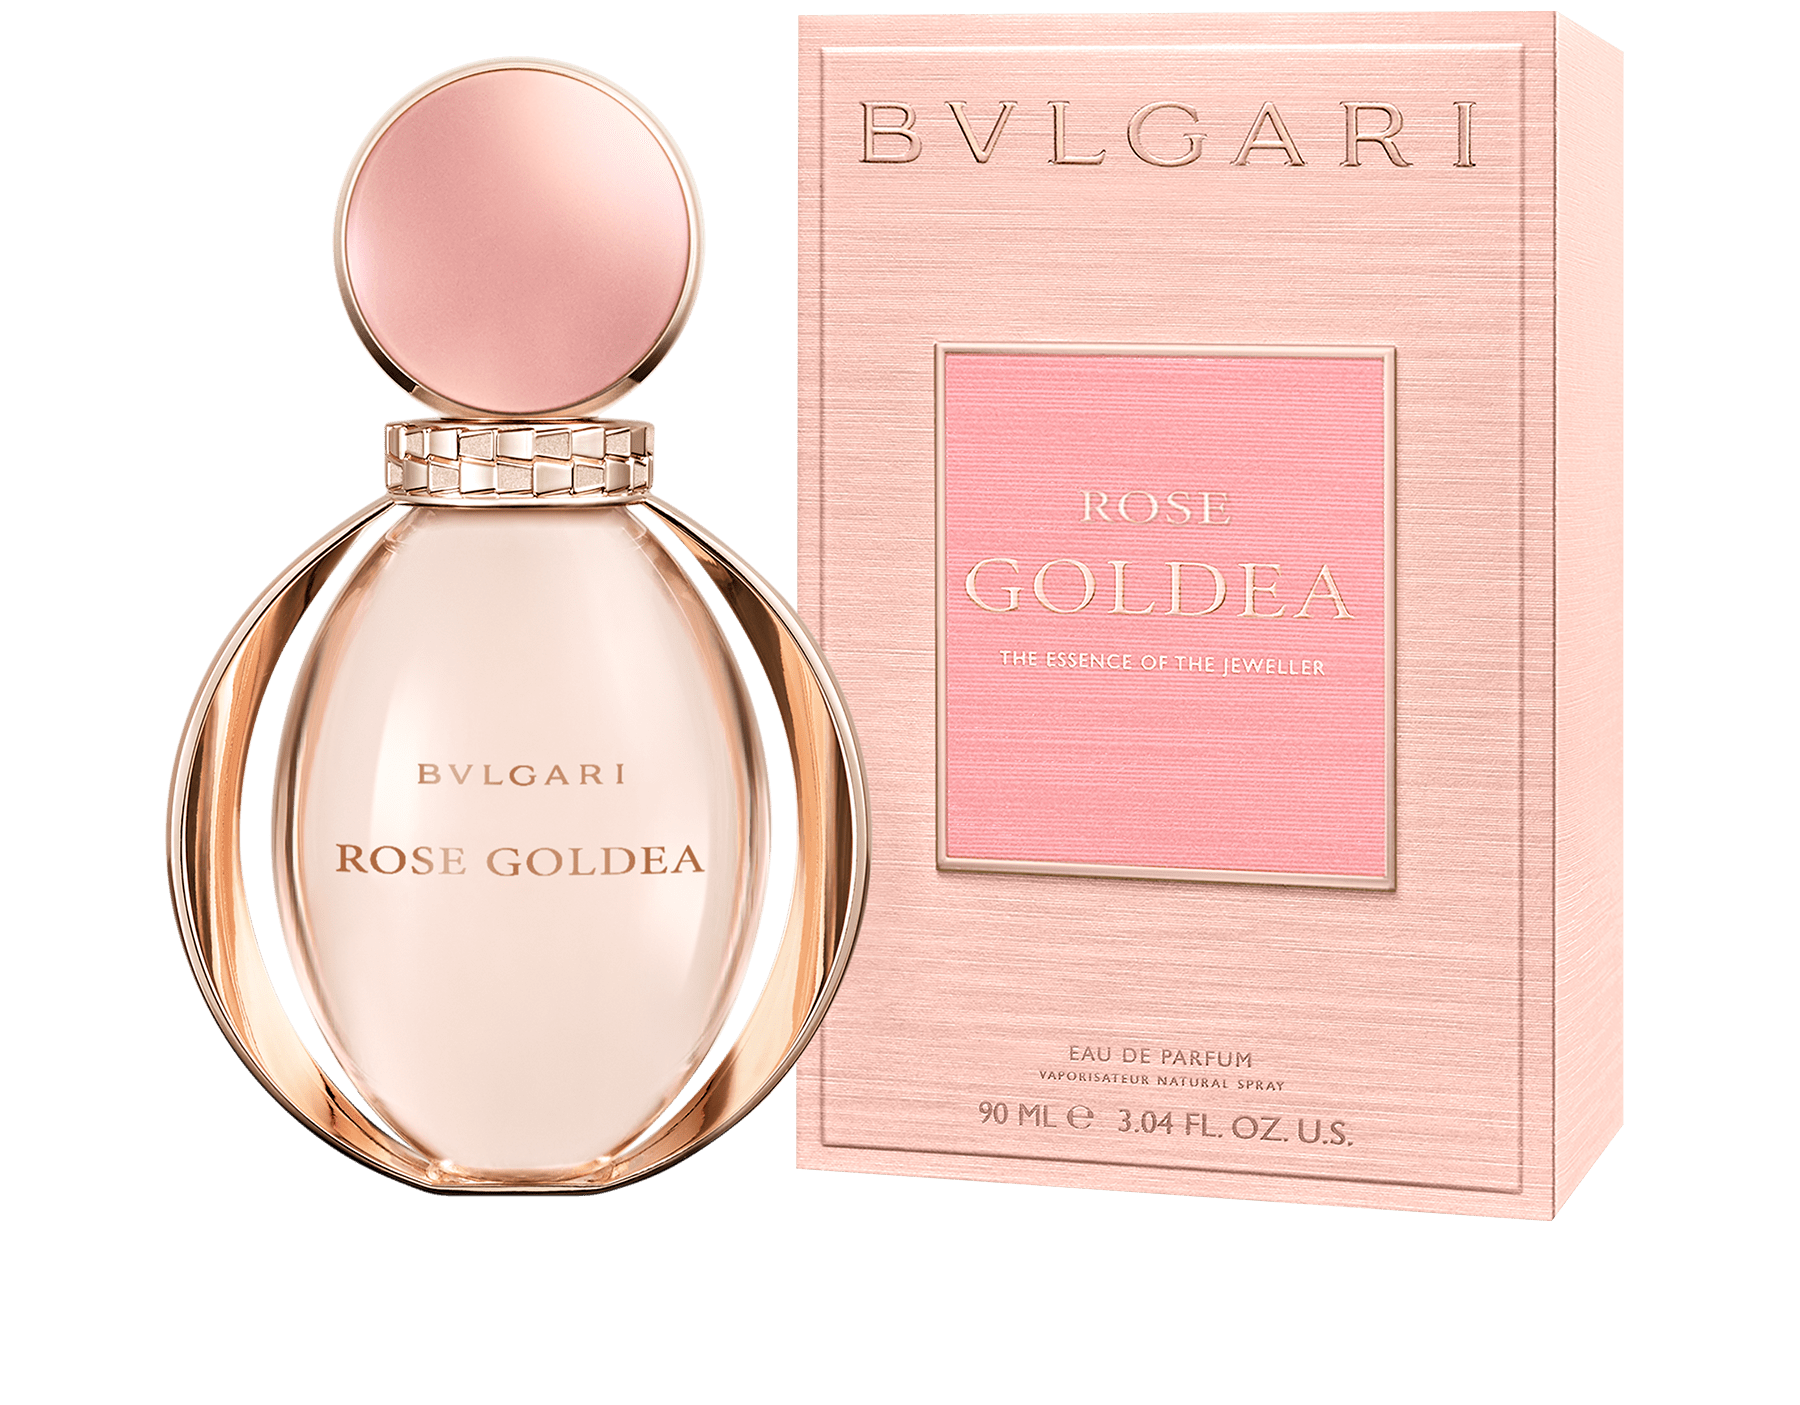 bvlgari perfume